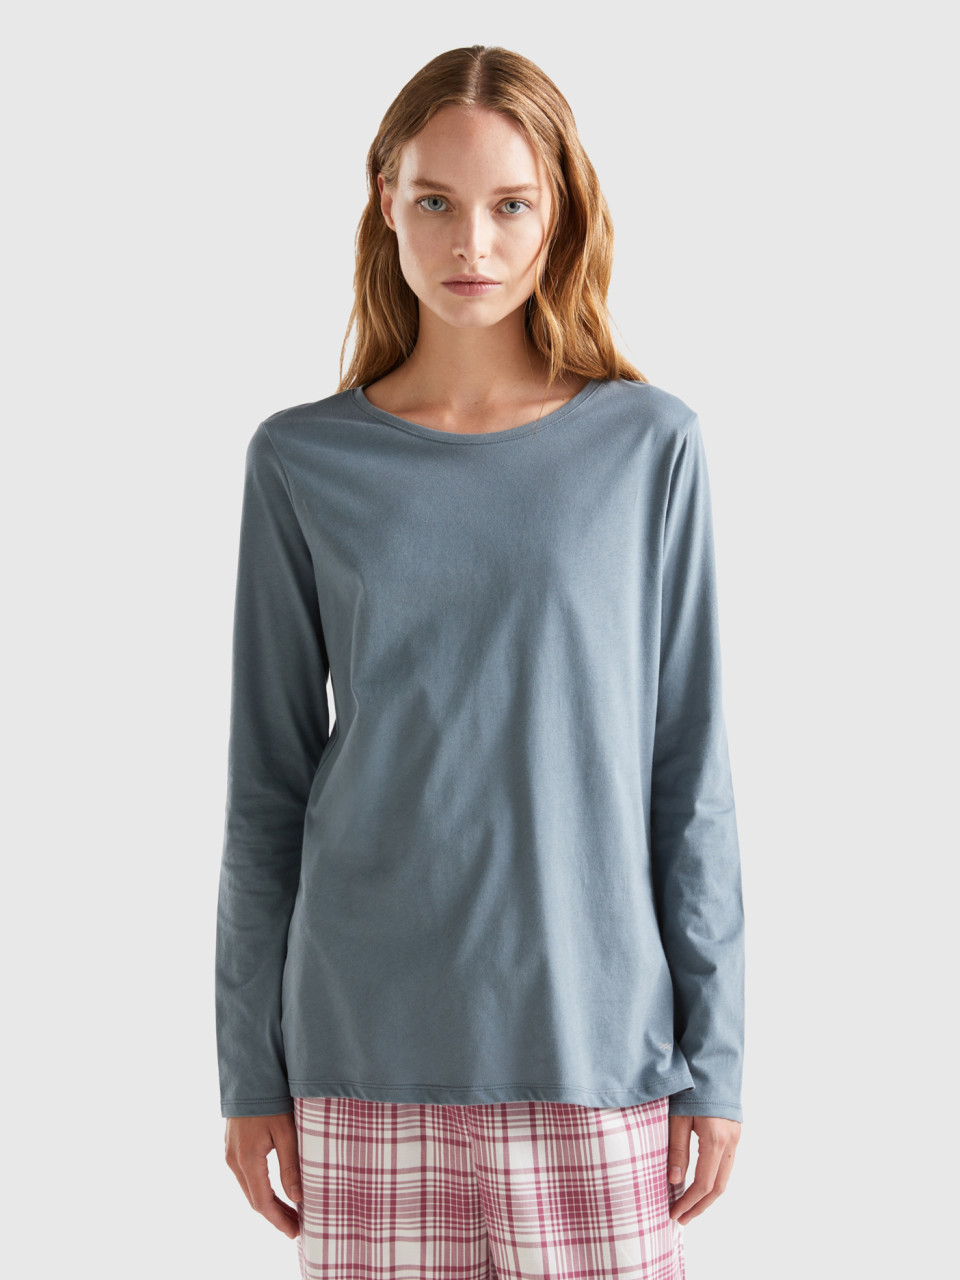 Benetton, Long Fiber Cotton T-shirt, Dark Gray, Women